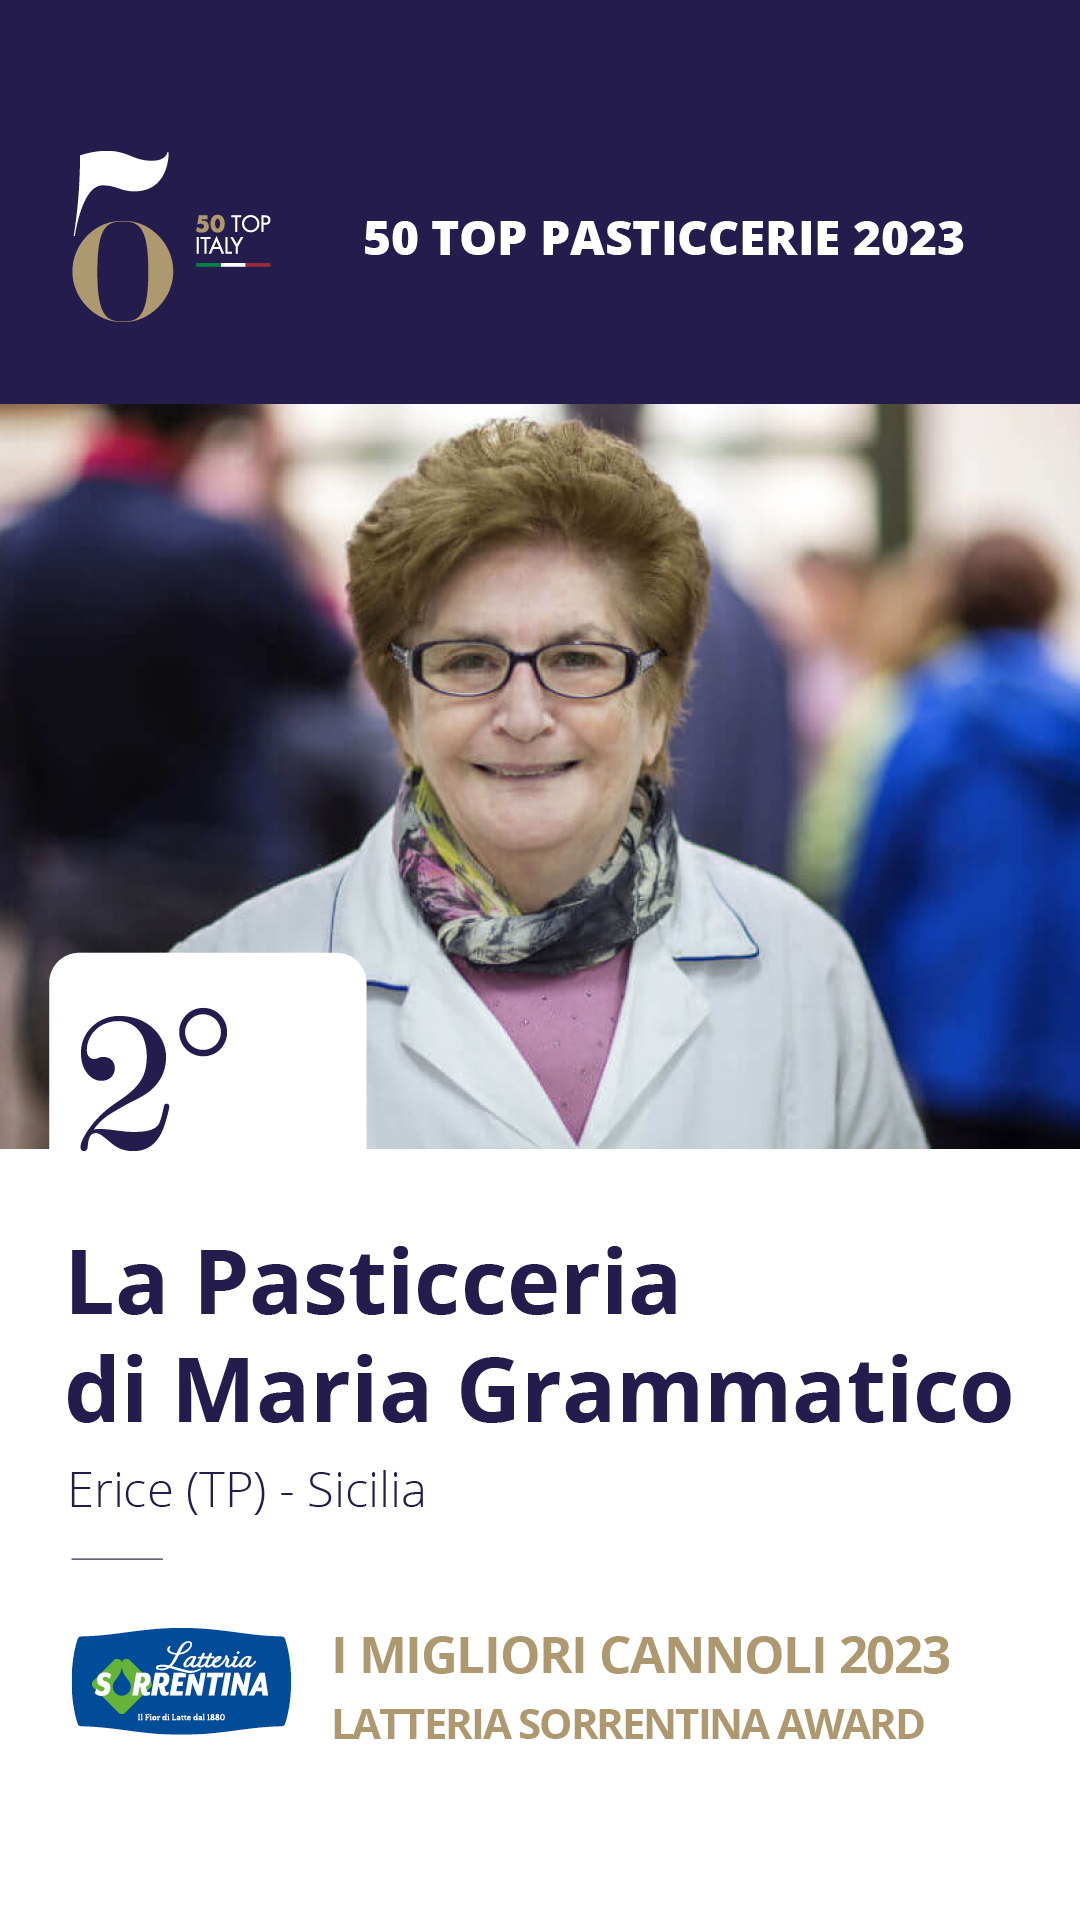 2 - La Pasticceria di Maria Grammatico - Erice (TP), Sicilia